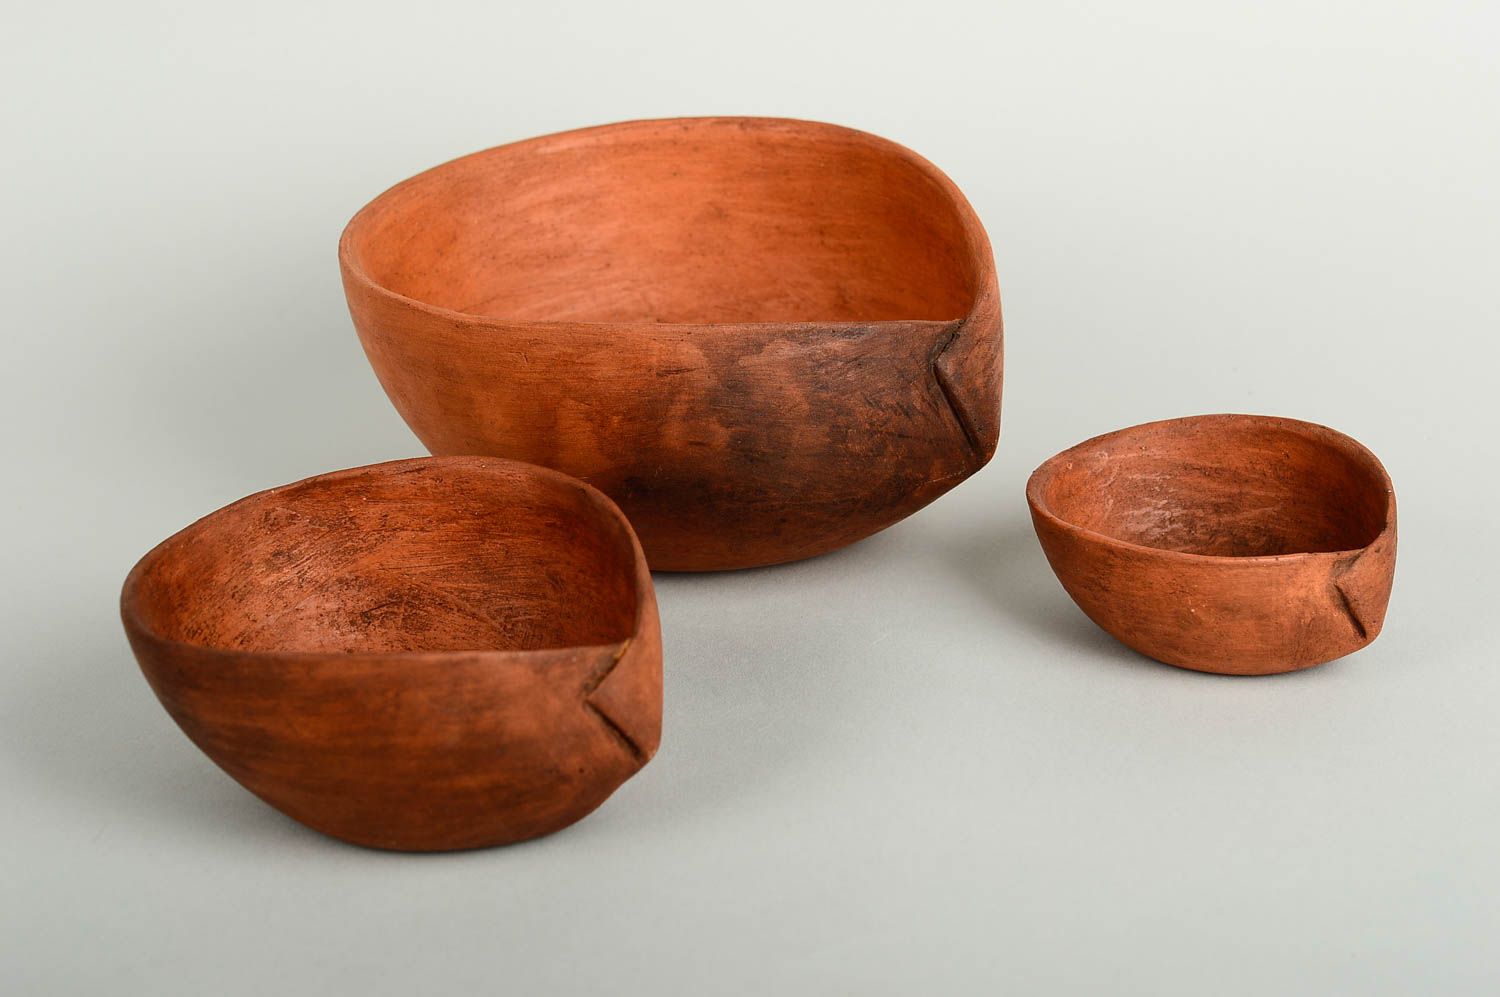 Handmade ceramic bowl 3 pieces home ceramics home goods table setting ideas photo 2